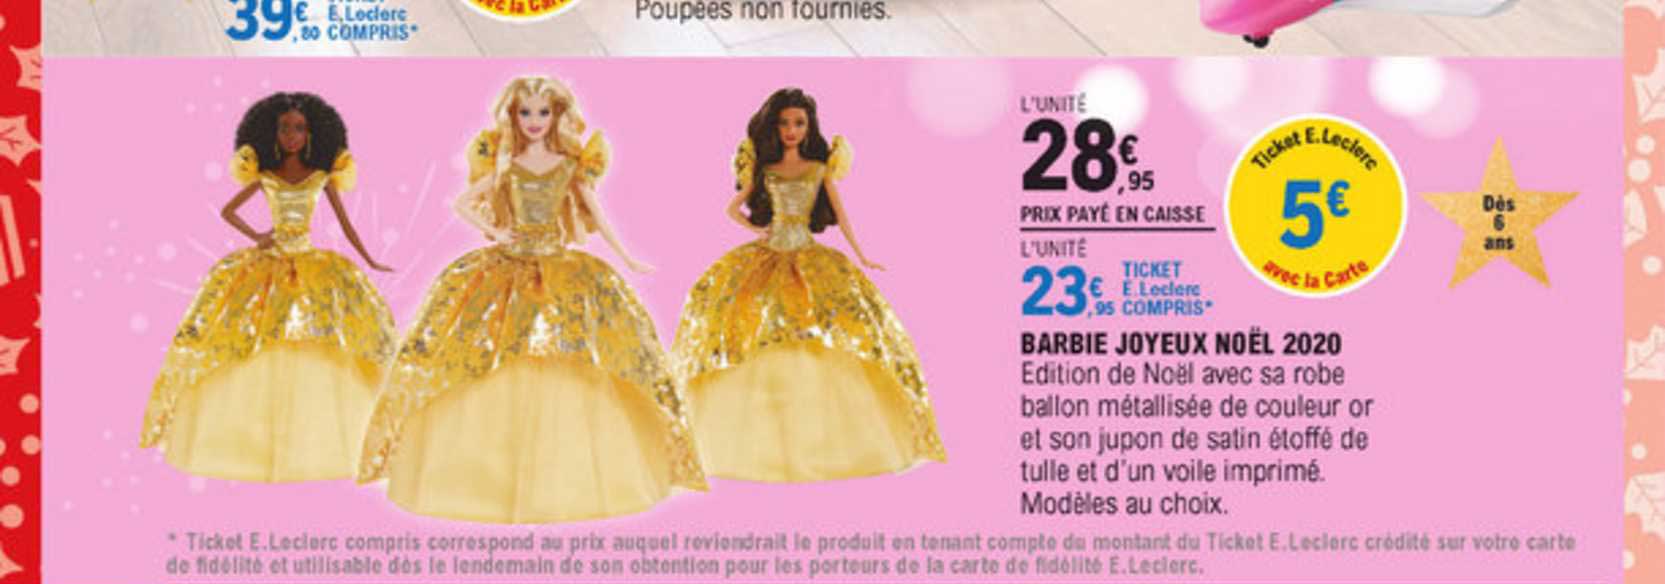 Offre Barbie Joyeux Noel Chez E Leclerc